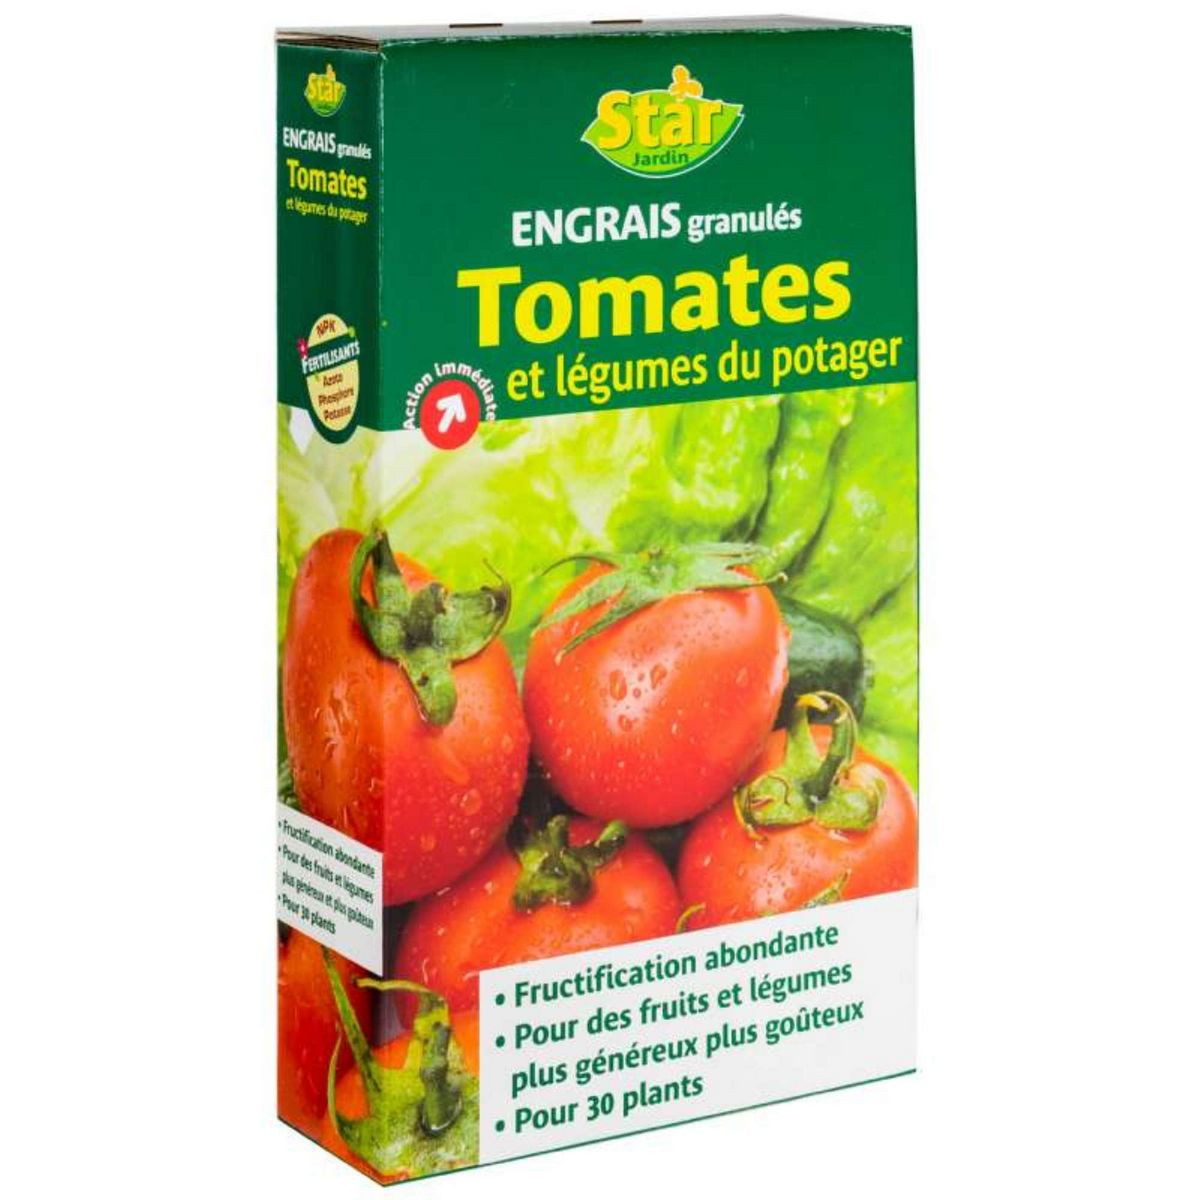 Star jardin Engrais tomates et légumes granulés 1kg Star Jardin